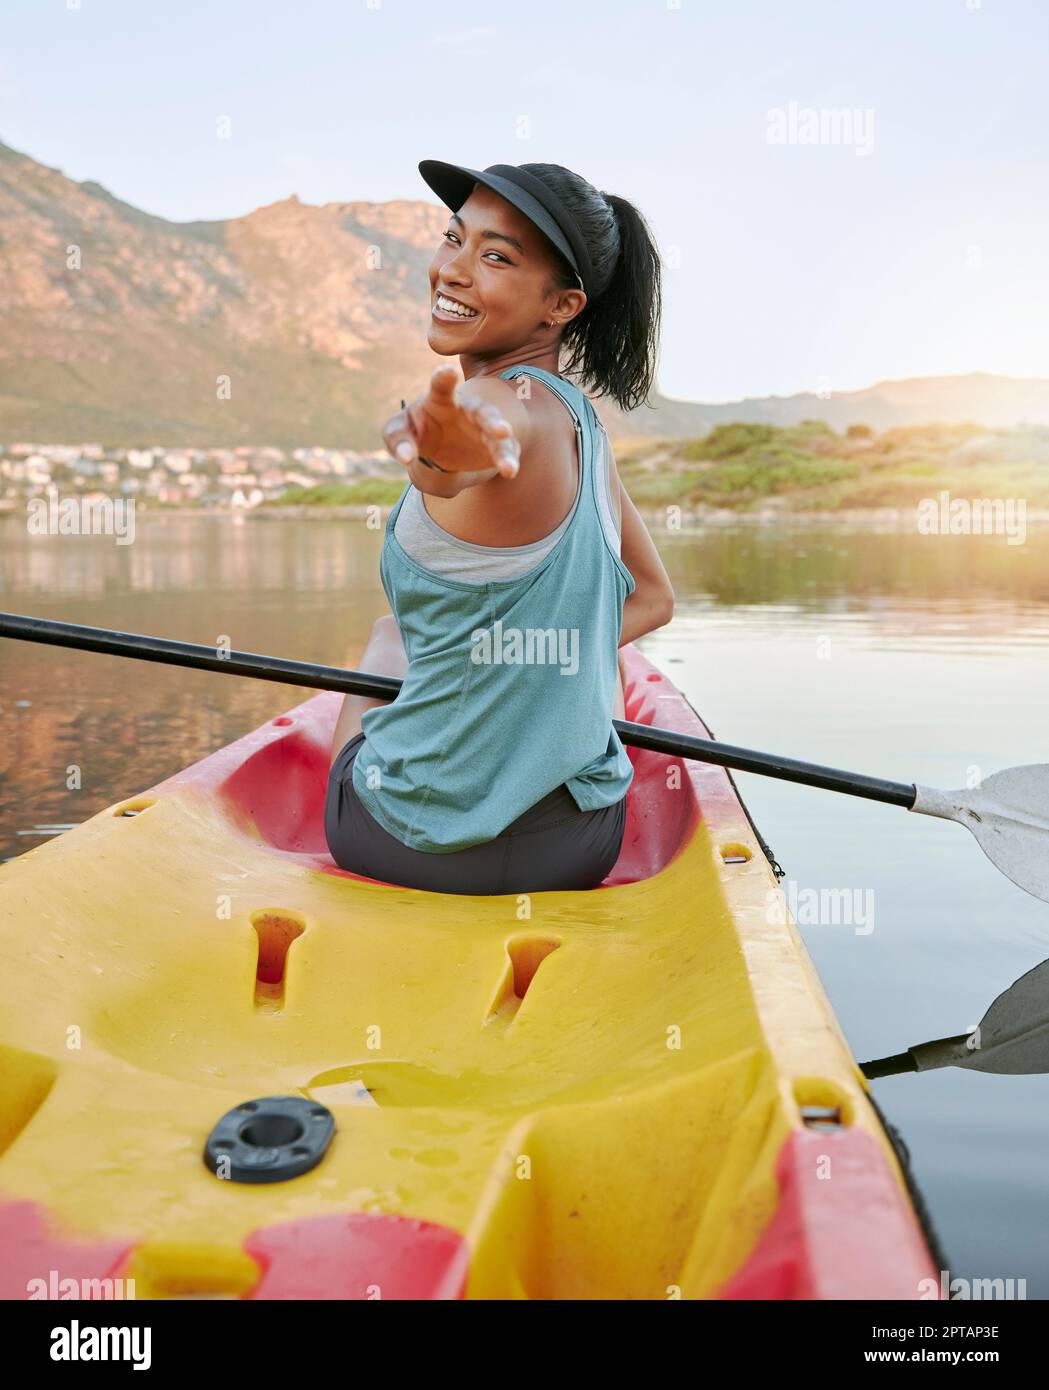 Kayak, sourire et portrait d'une femme heureuse sur un lac pendant une  aventure d'été, des vacances ou des vacances. Voyage, liberté et fille du  Mexique sur un paddle Photo Stock - Alamy